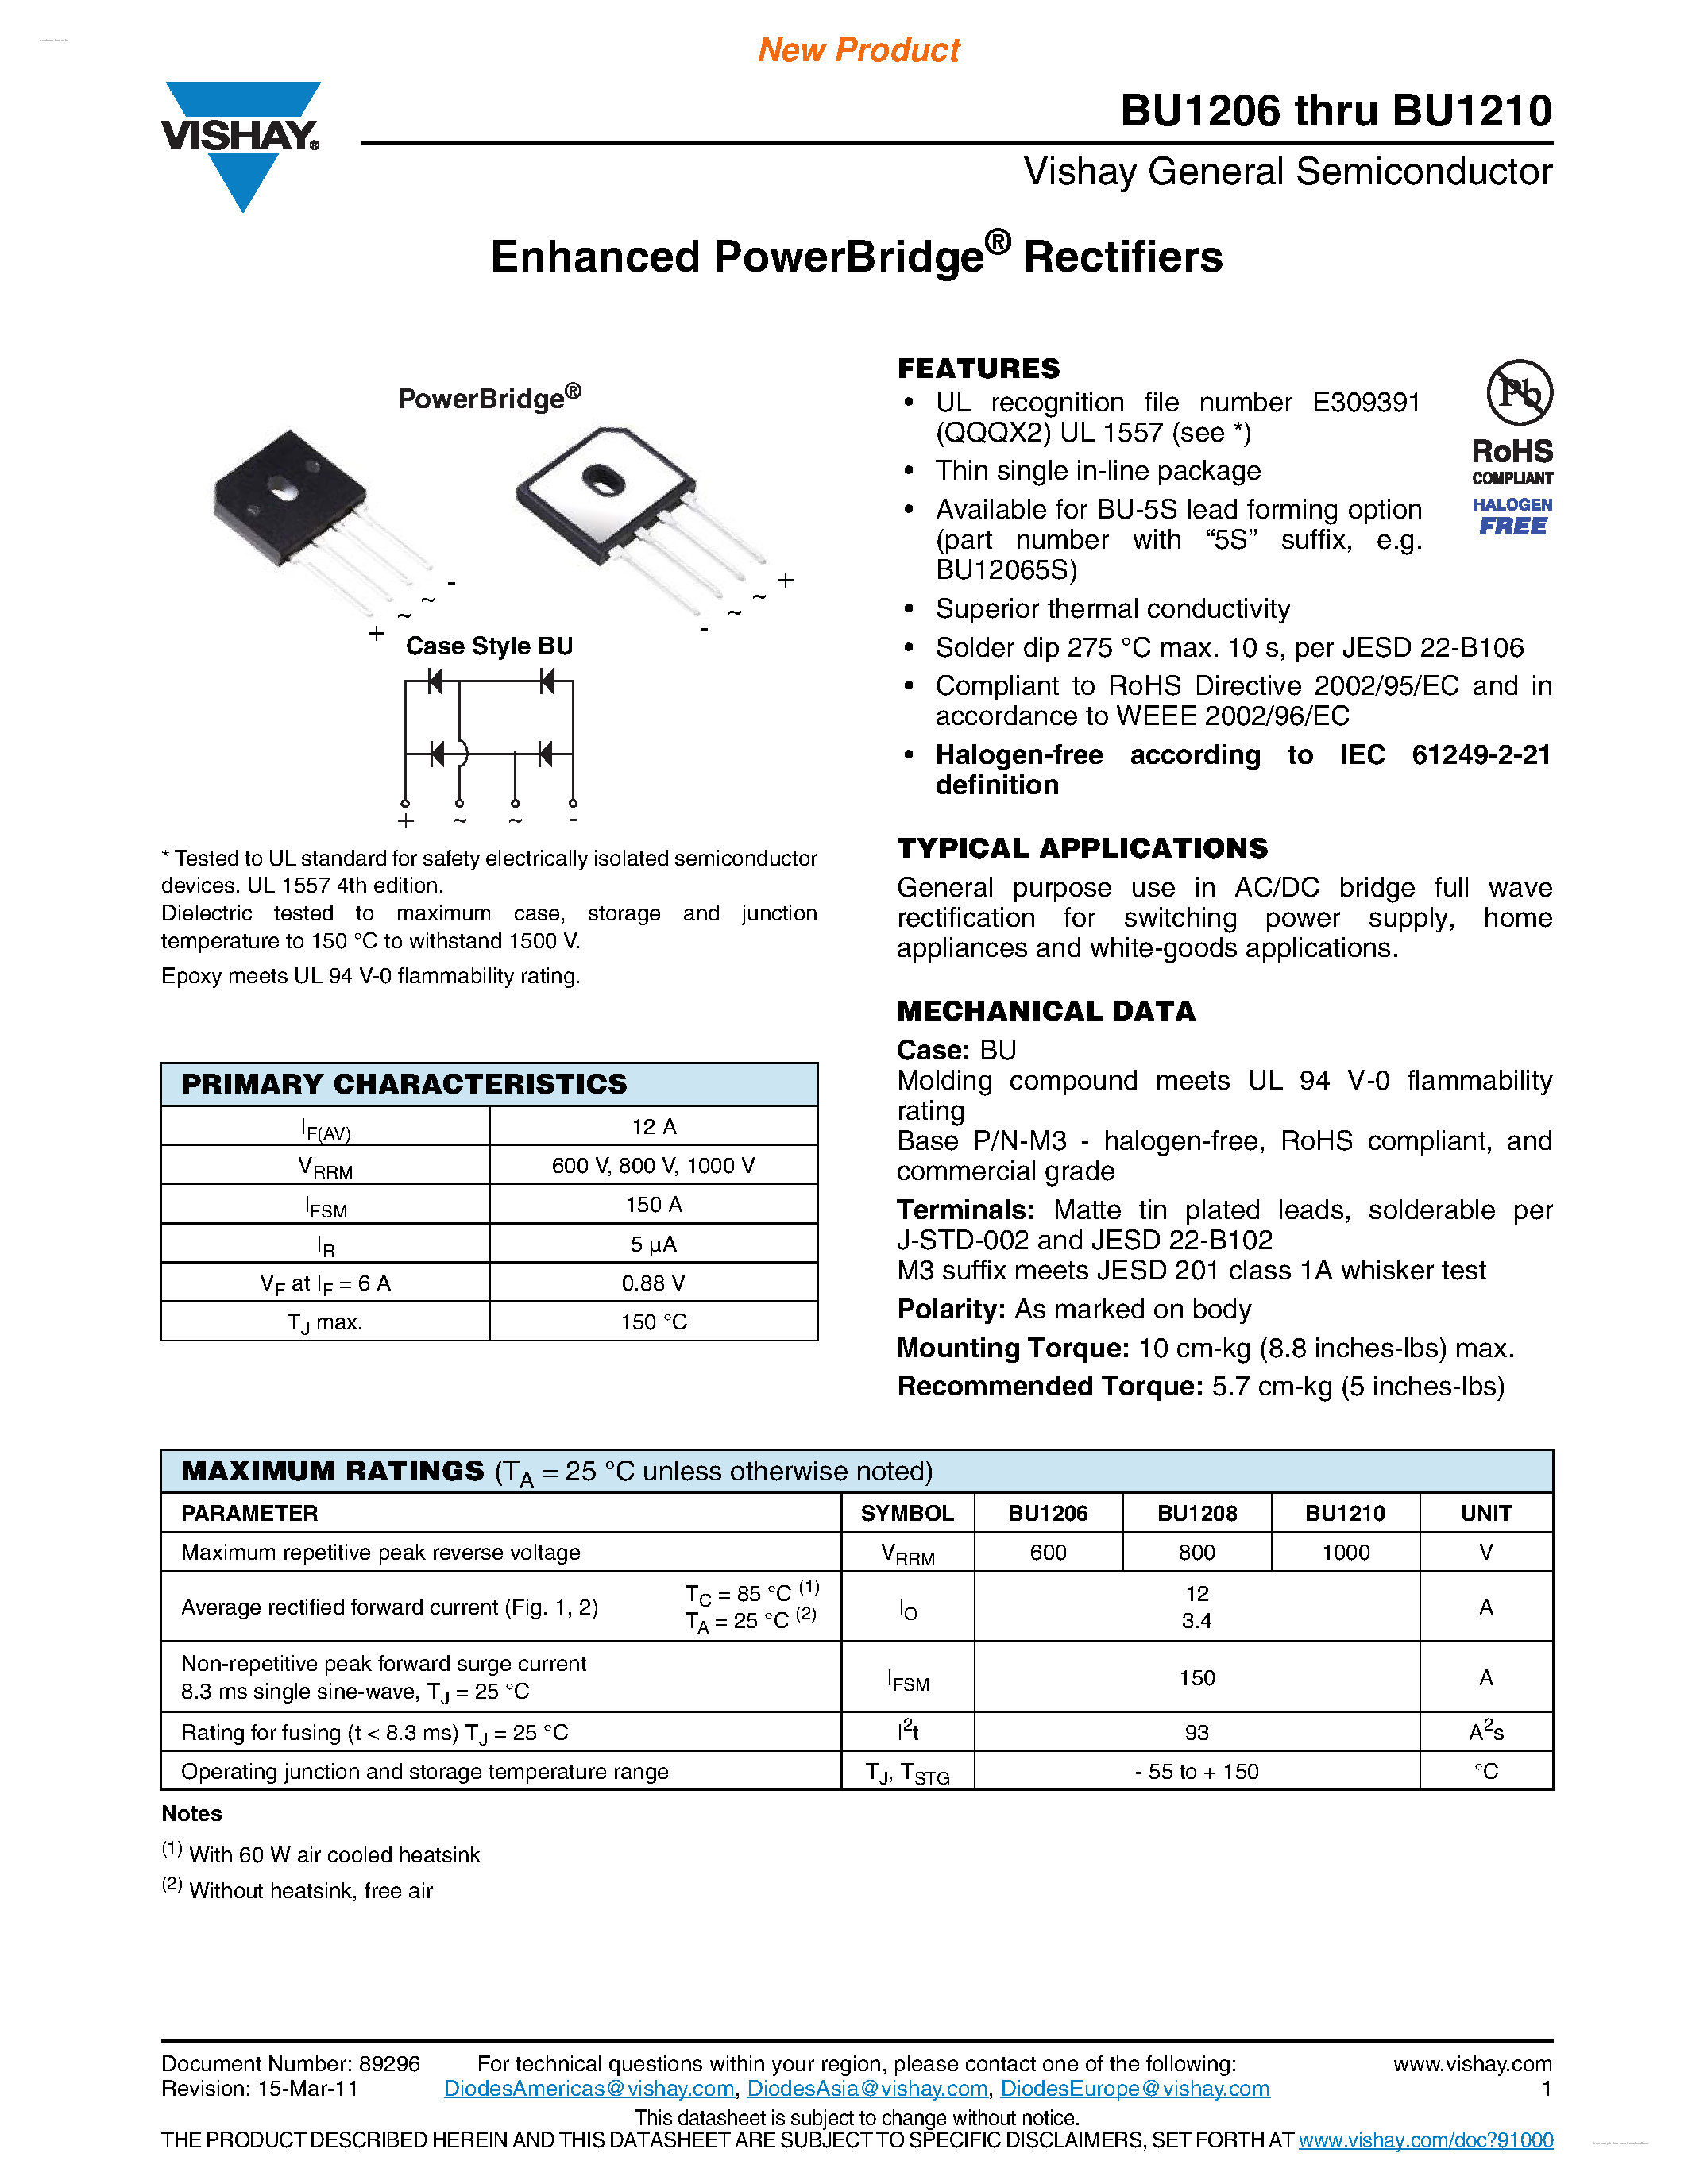 Datasheet BU1206 - (BU1206 - BU1210) Enhanced PowerBridge Rectifiers page 1